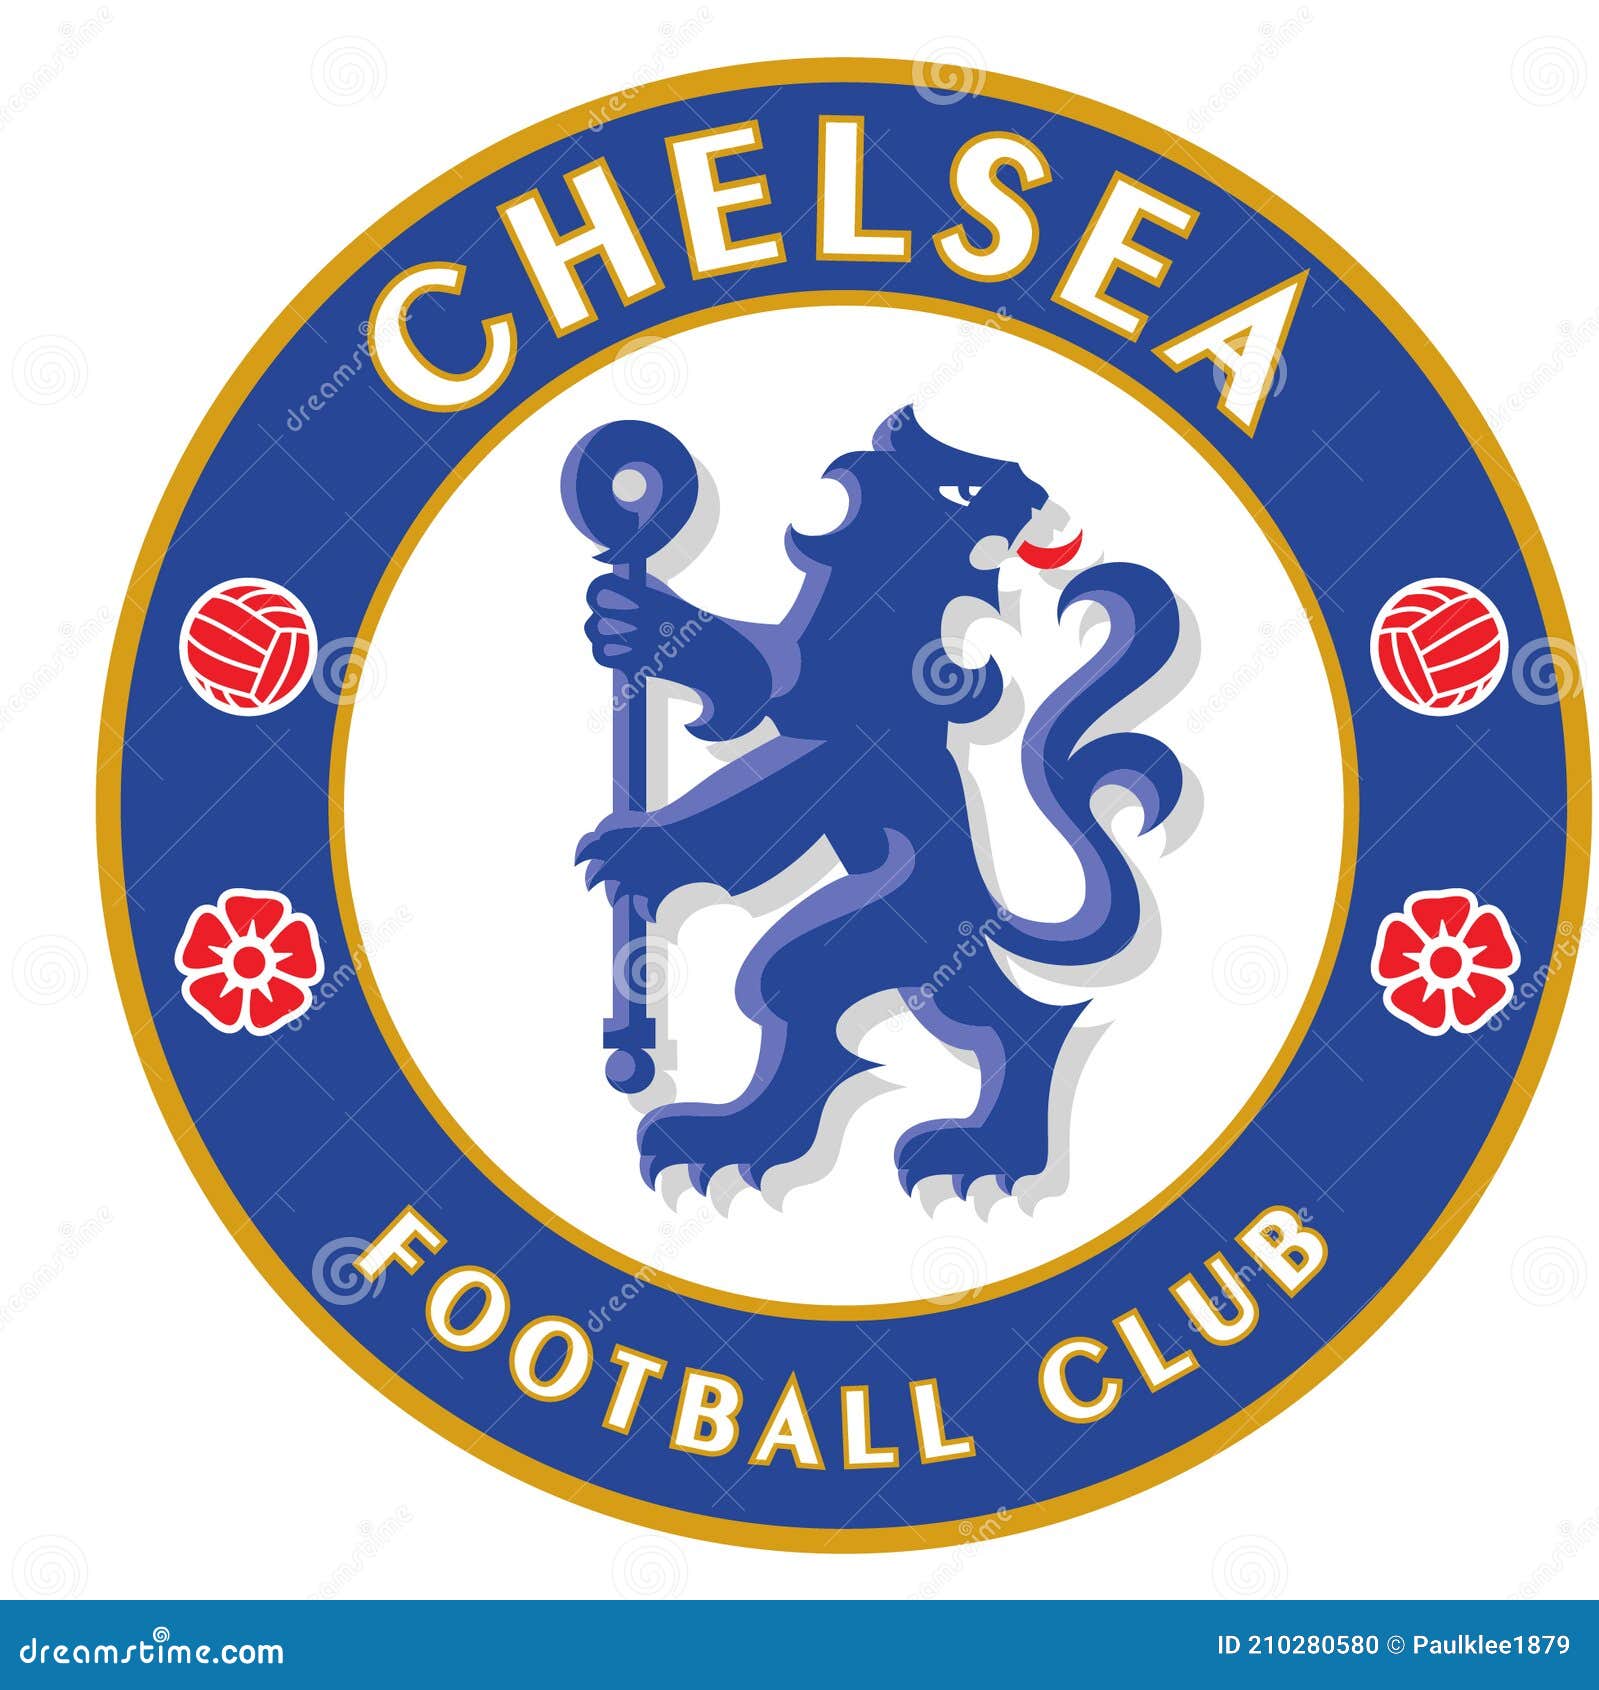 Chelsea Football Club là một trong những đội bóng lâu đời và tài năng nhất trong lịch sử bóng đá. Hãy khoe sự đam mê trái bóng tròn và tận hưởng mỗi trận đấu với hình nền Club logo đầy cảm hứng!